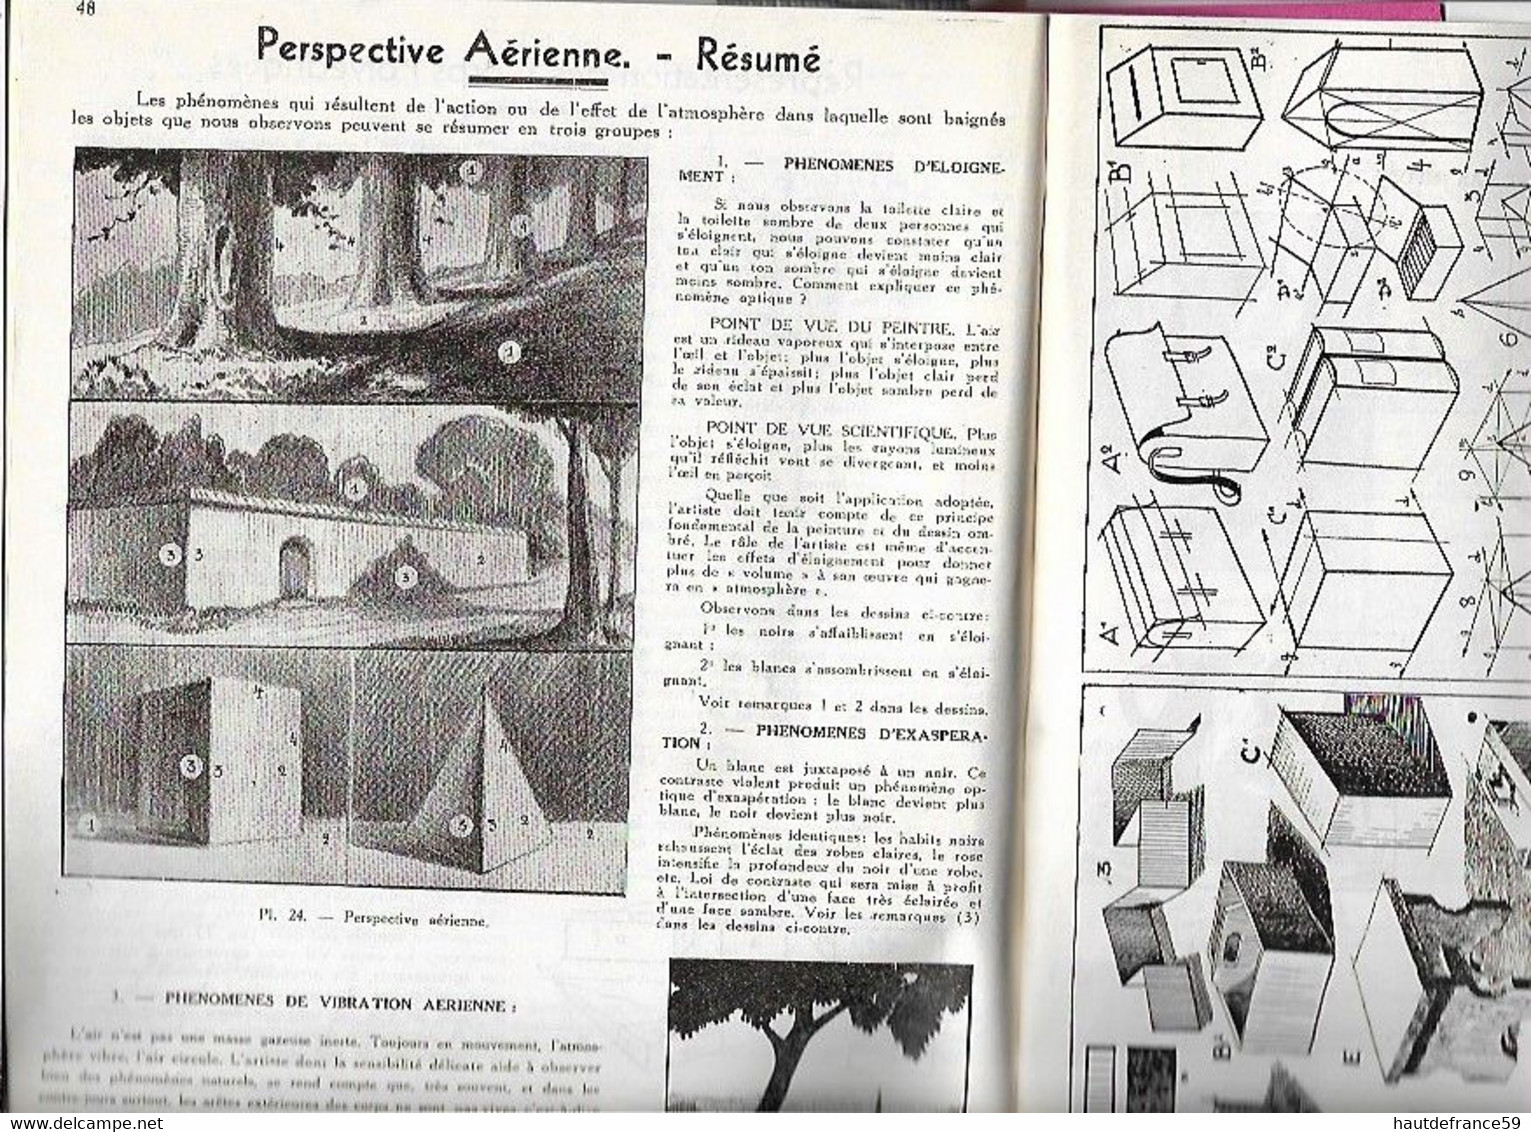 Enseignement Du Dessin COURS STUDIO  1937 LE DESSIN RATIONNEL  Cours III - La Louvière Belgique Nombreux Dessins Schémas - Other Plans